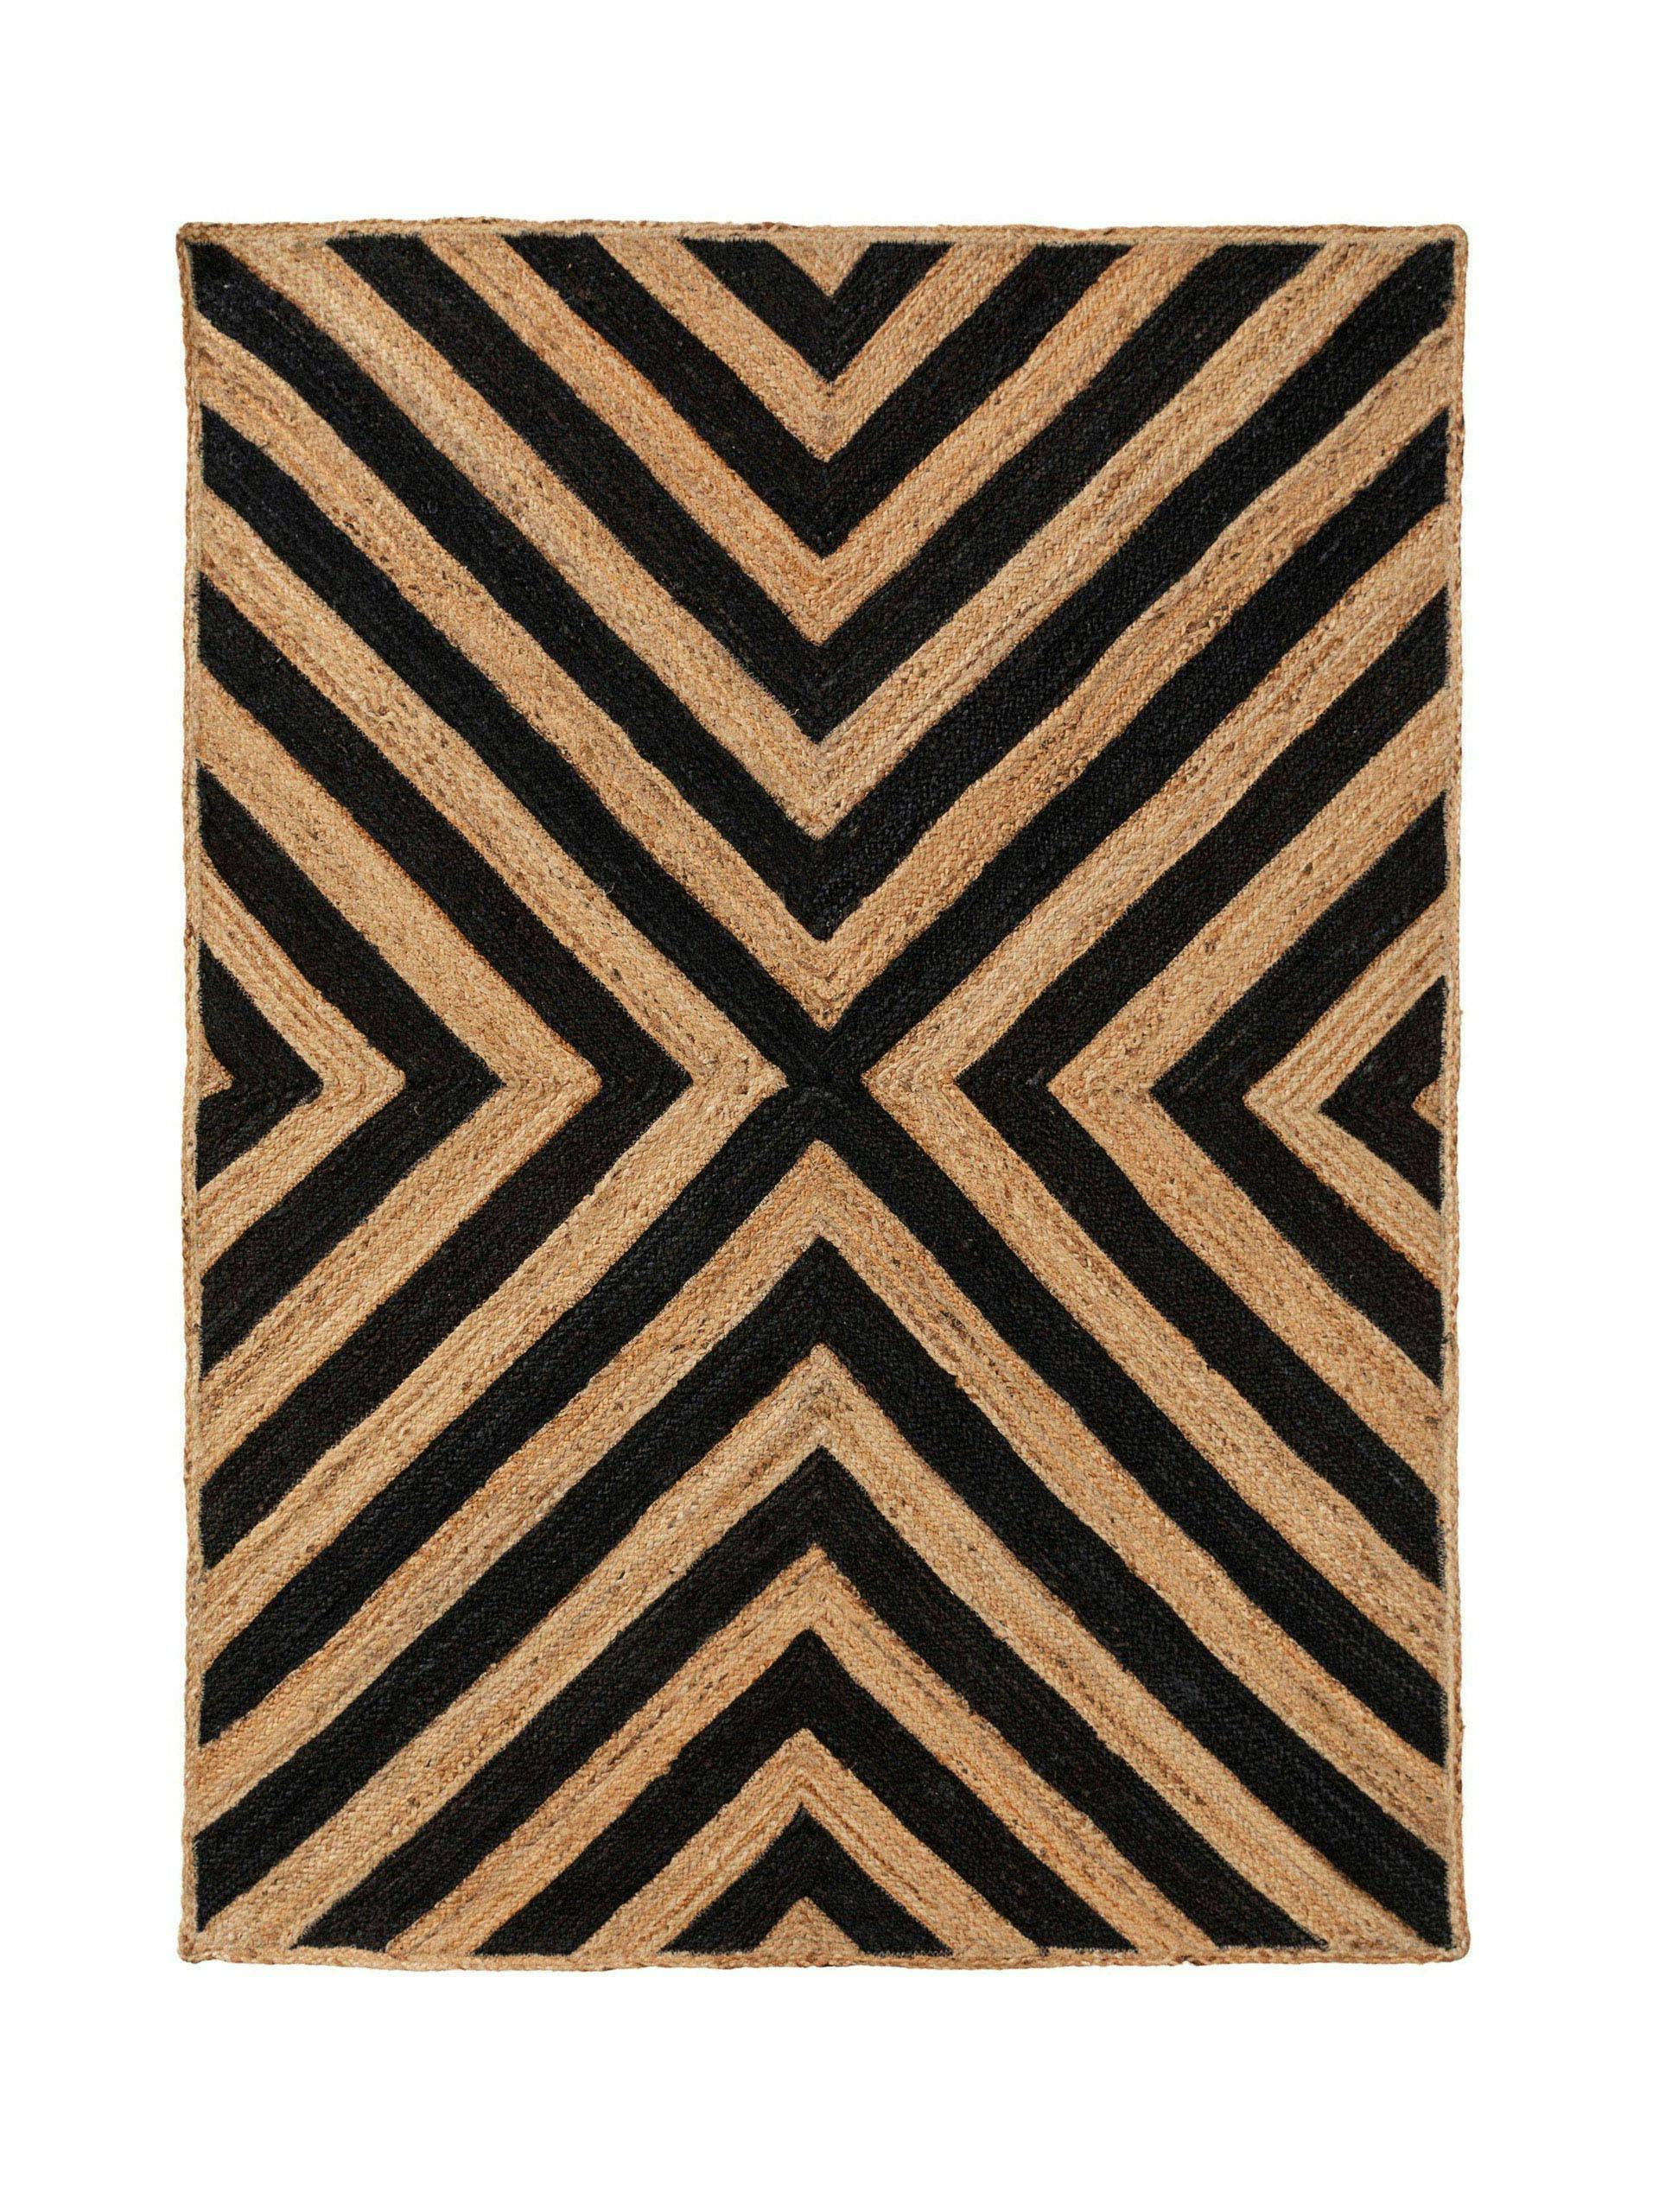 Brown and black jute stripe pattern rug